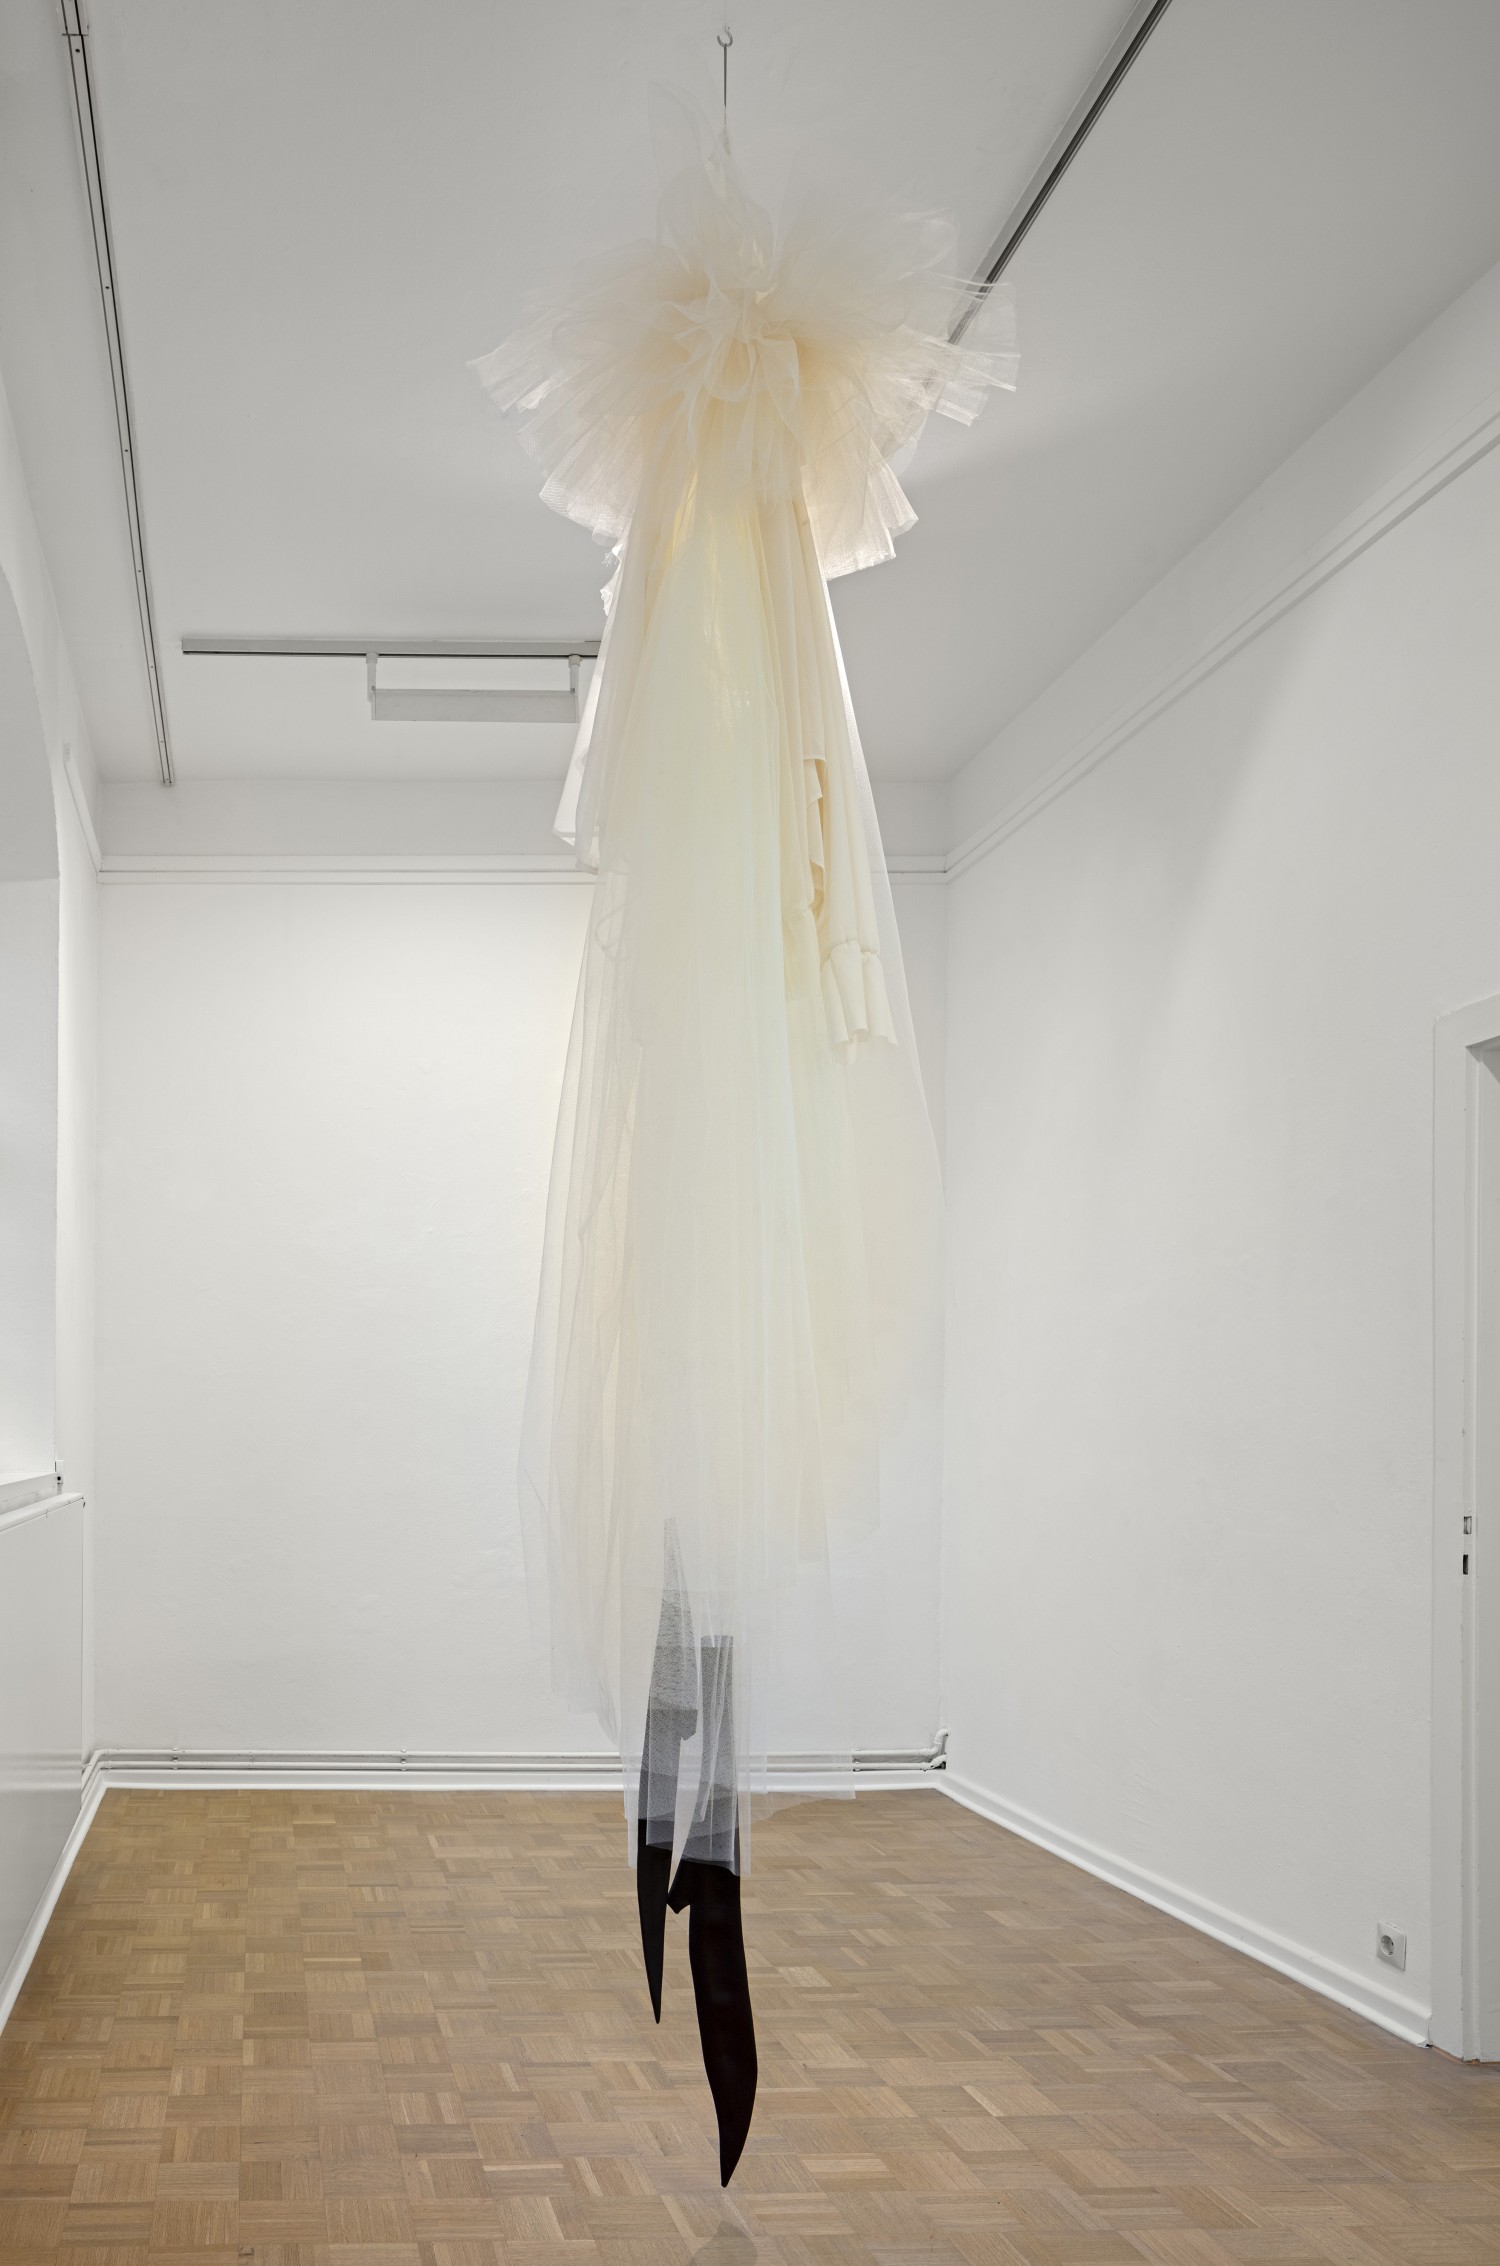 Die Arbeit "Loge" von Julie Béna besteht aus übergroßen, Raum einnehmenden Kleidungsstücken, die von der Decke herunterhängen und eine Irritation der Empfindung von Dimension und Raum auslösen.